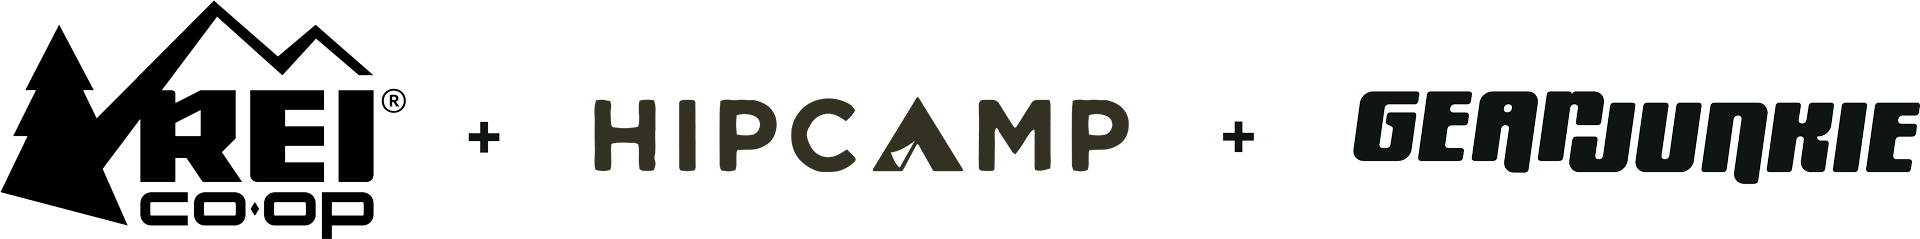 REI + Hipcamp + GearJunkie logos